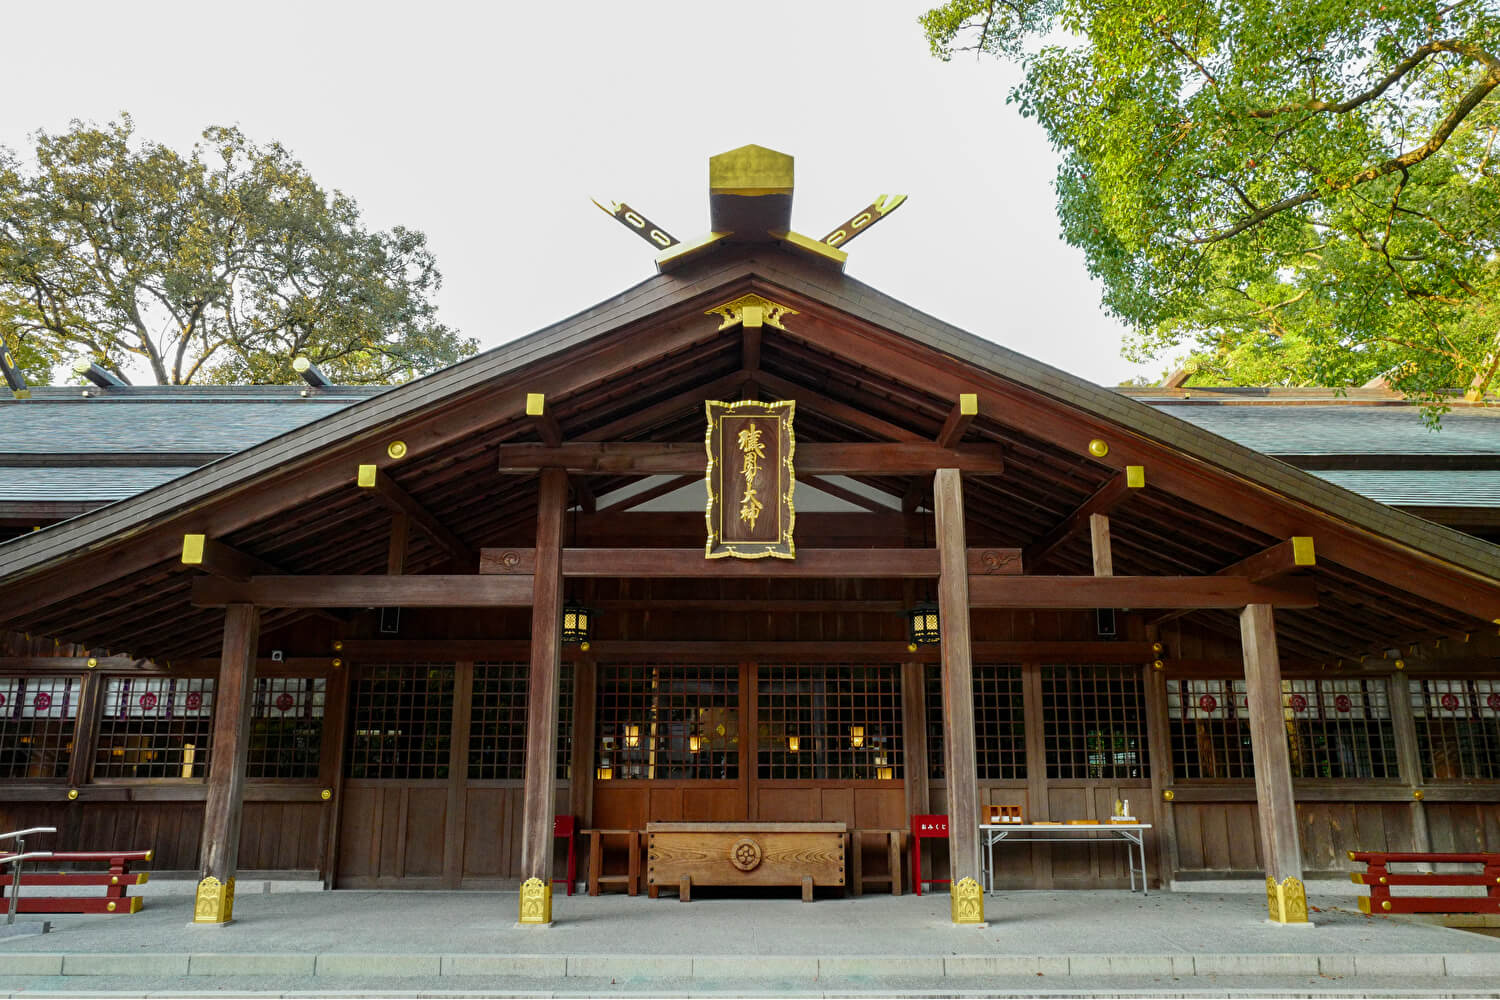 猿田彦神社、拝殿©仰木一弘 wih LeicaQ